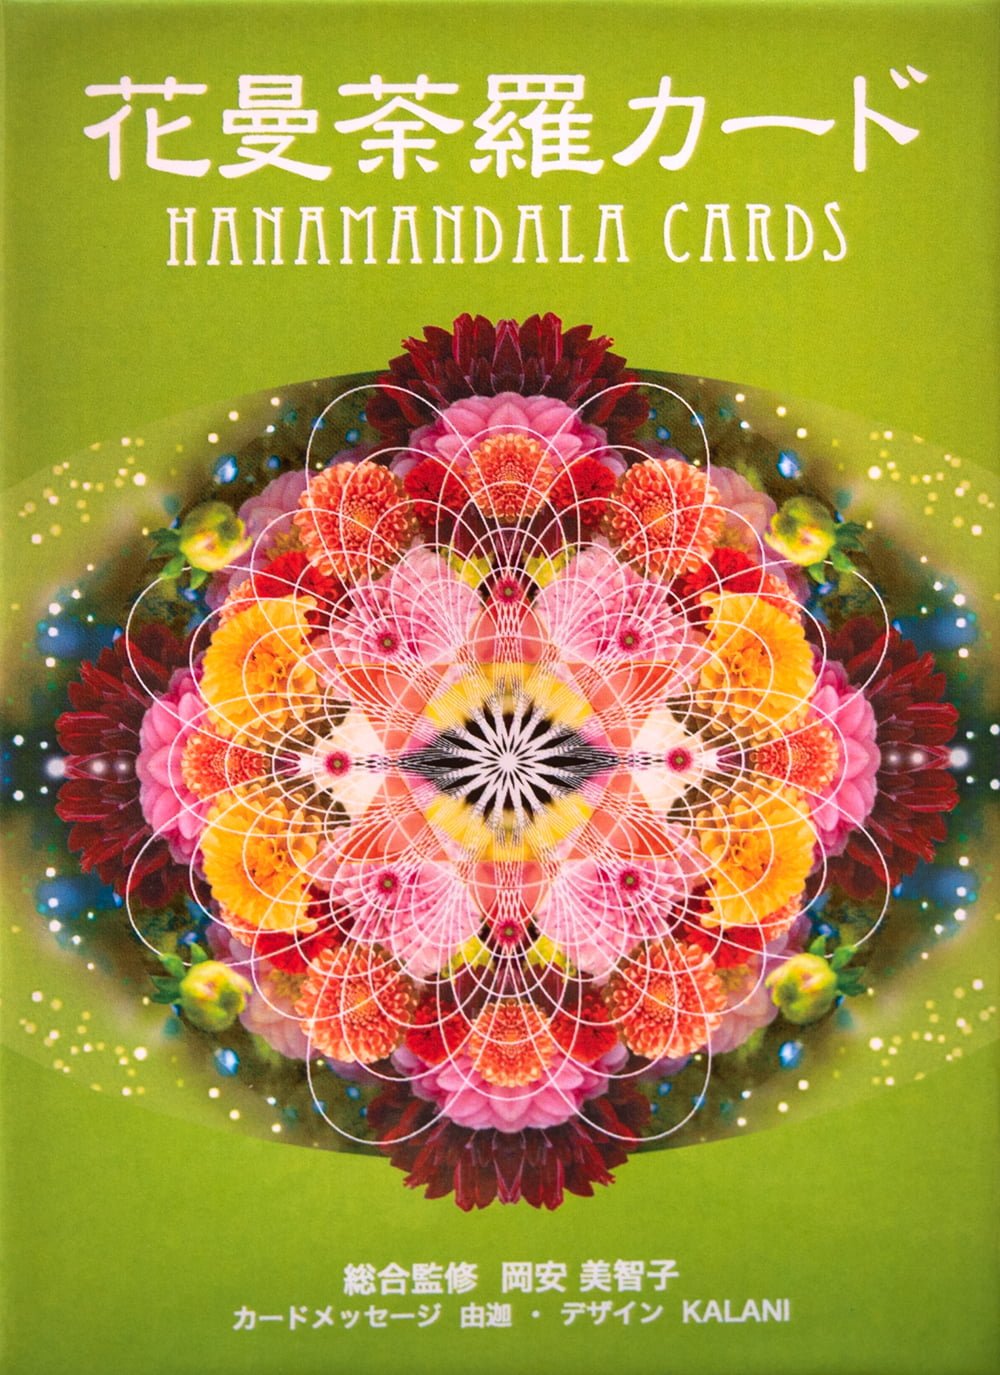 花曼荼羅 カード - HANAMANDALA CARDS